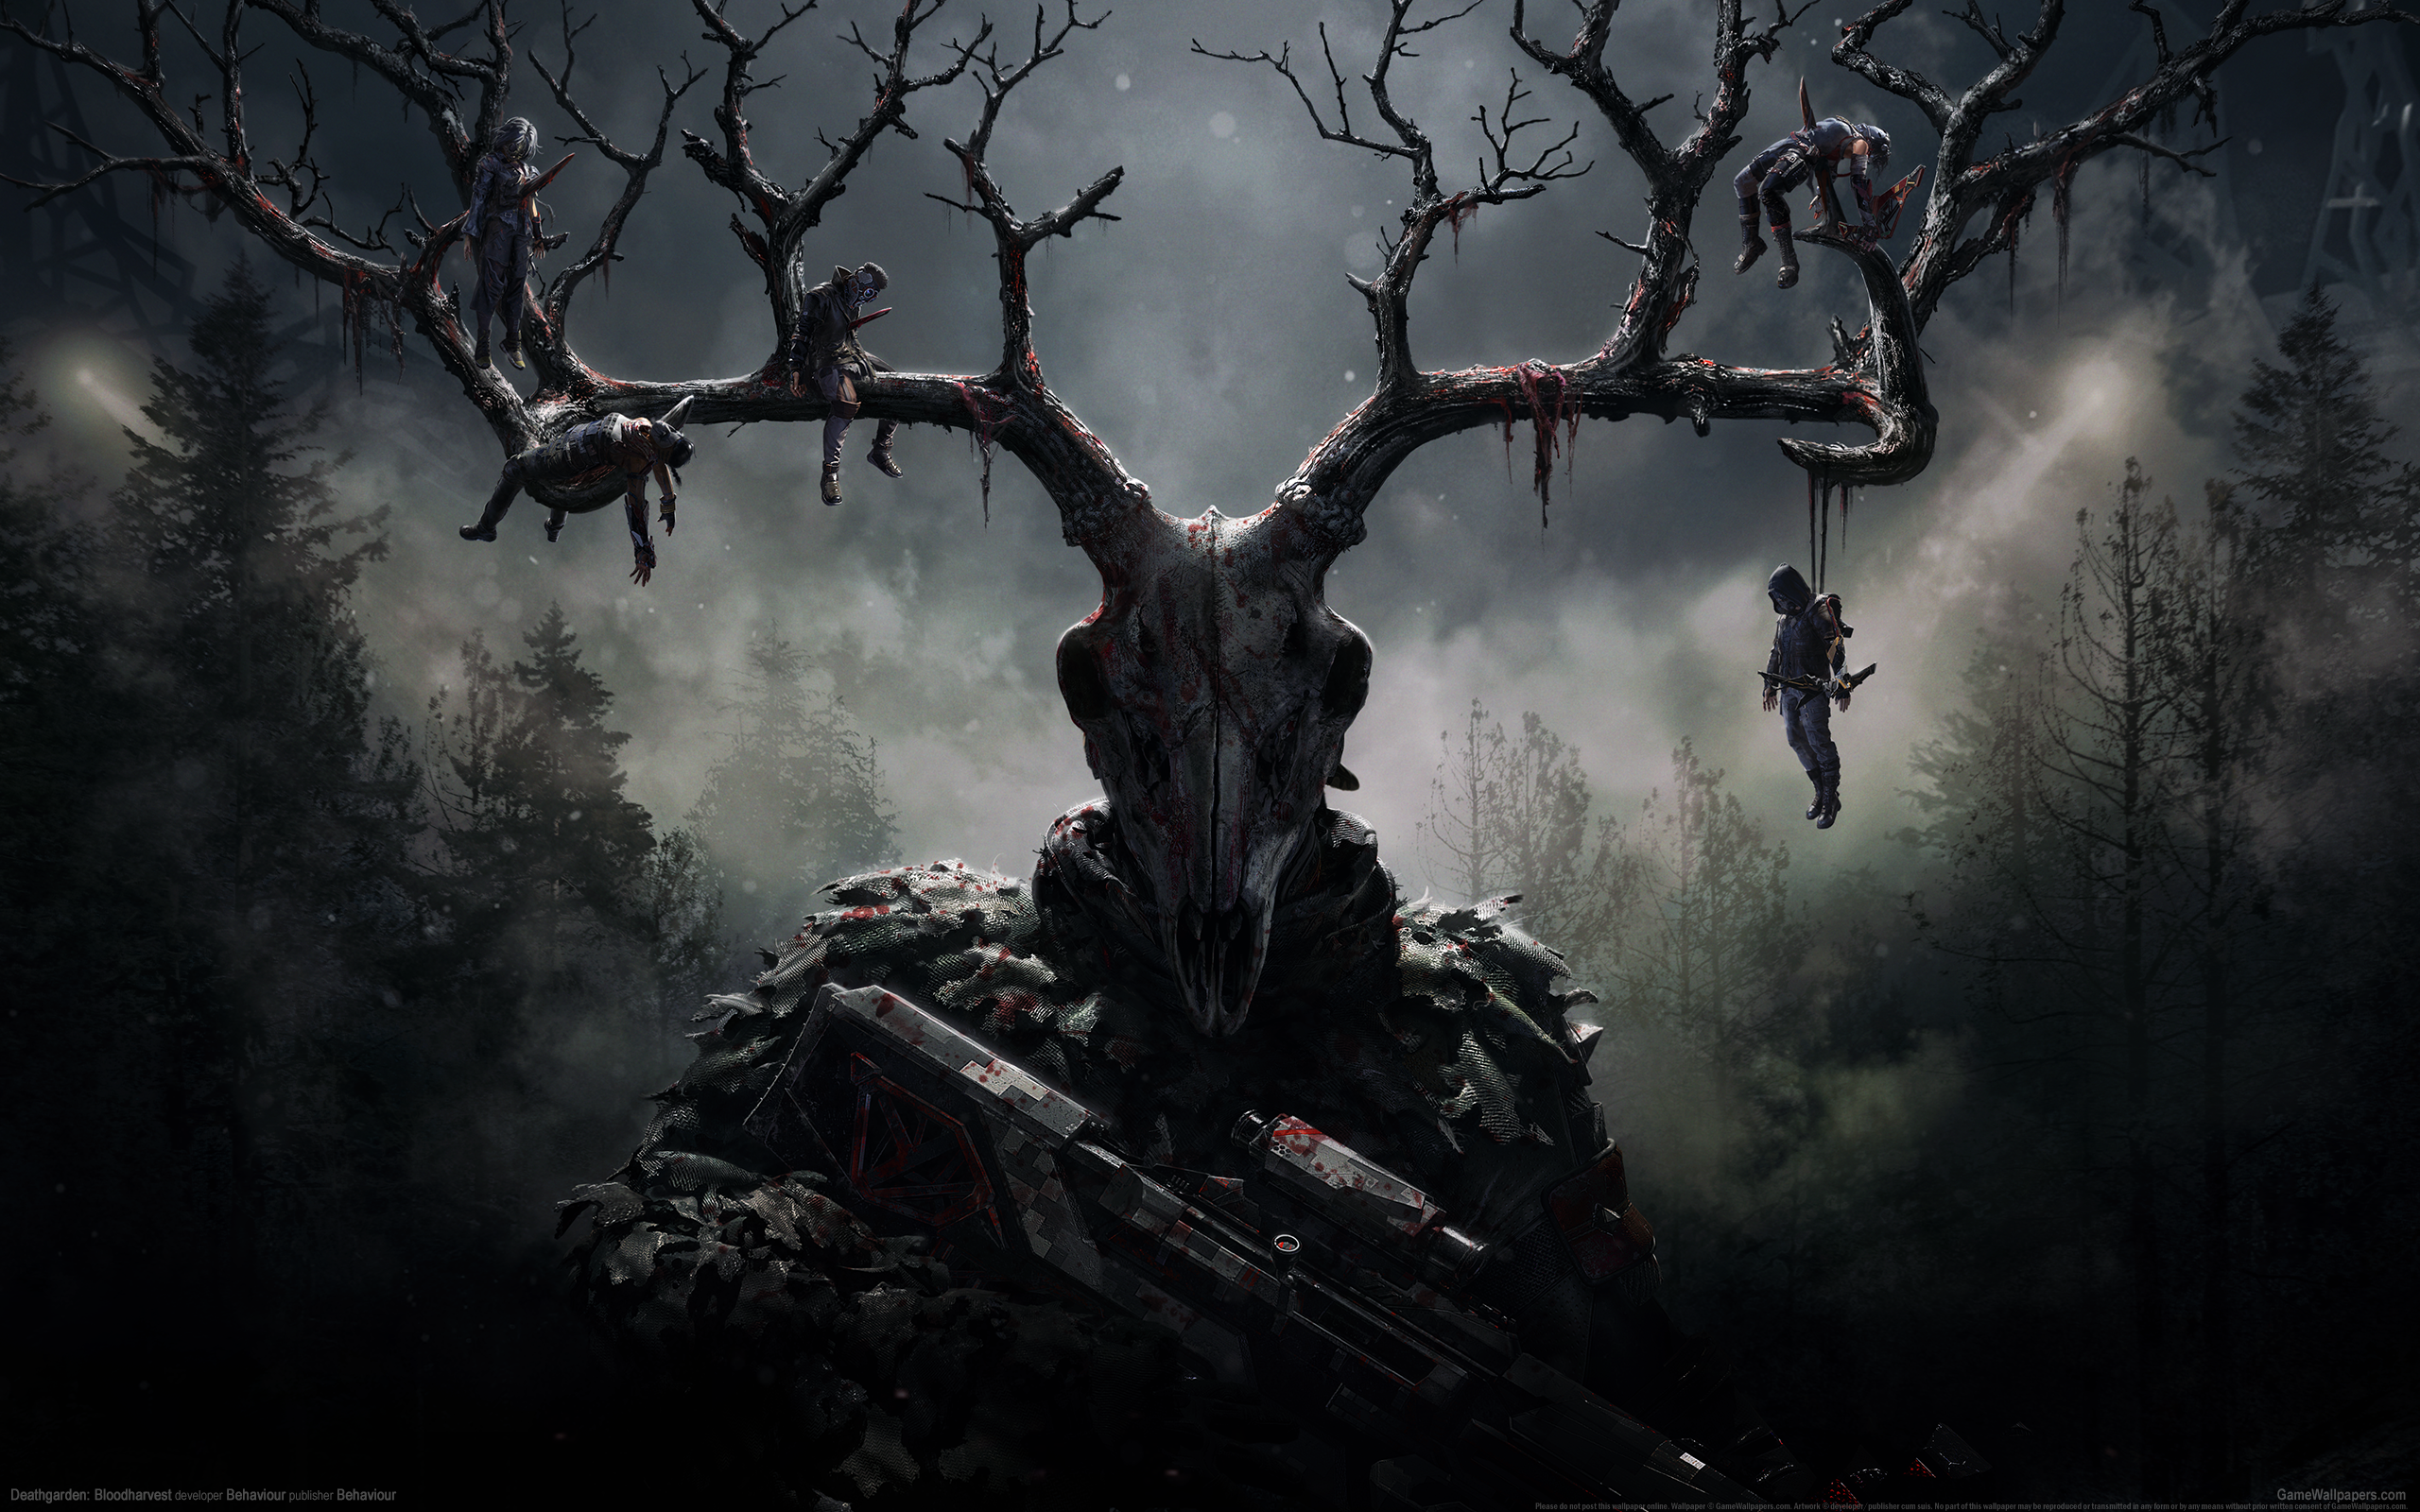 Deathgarden: Bloodharvest 2560x1600 wallpaper or background 01